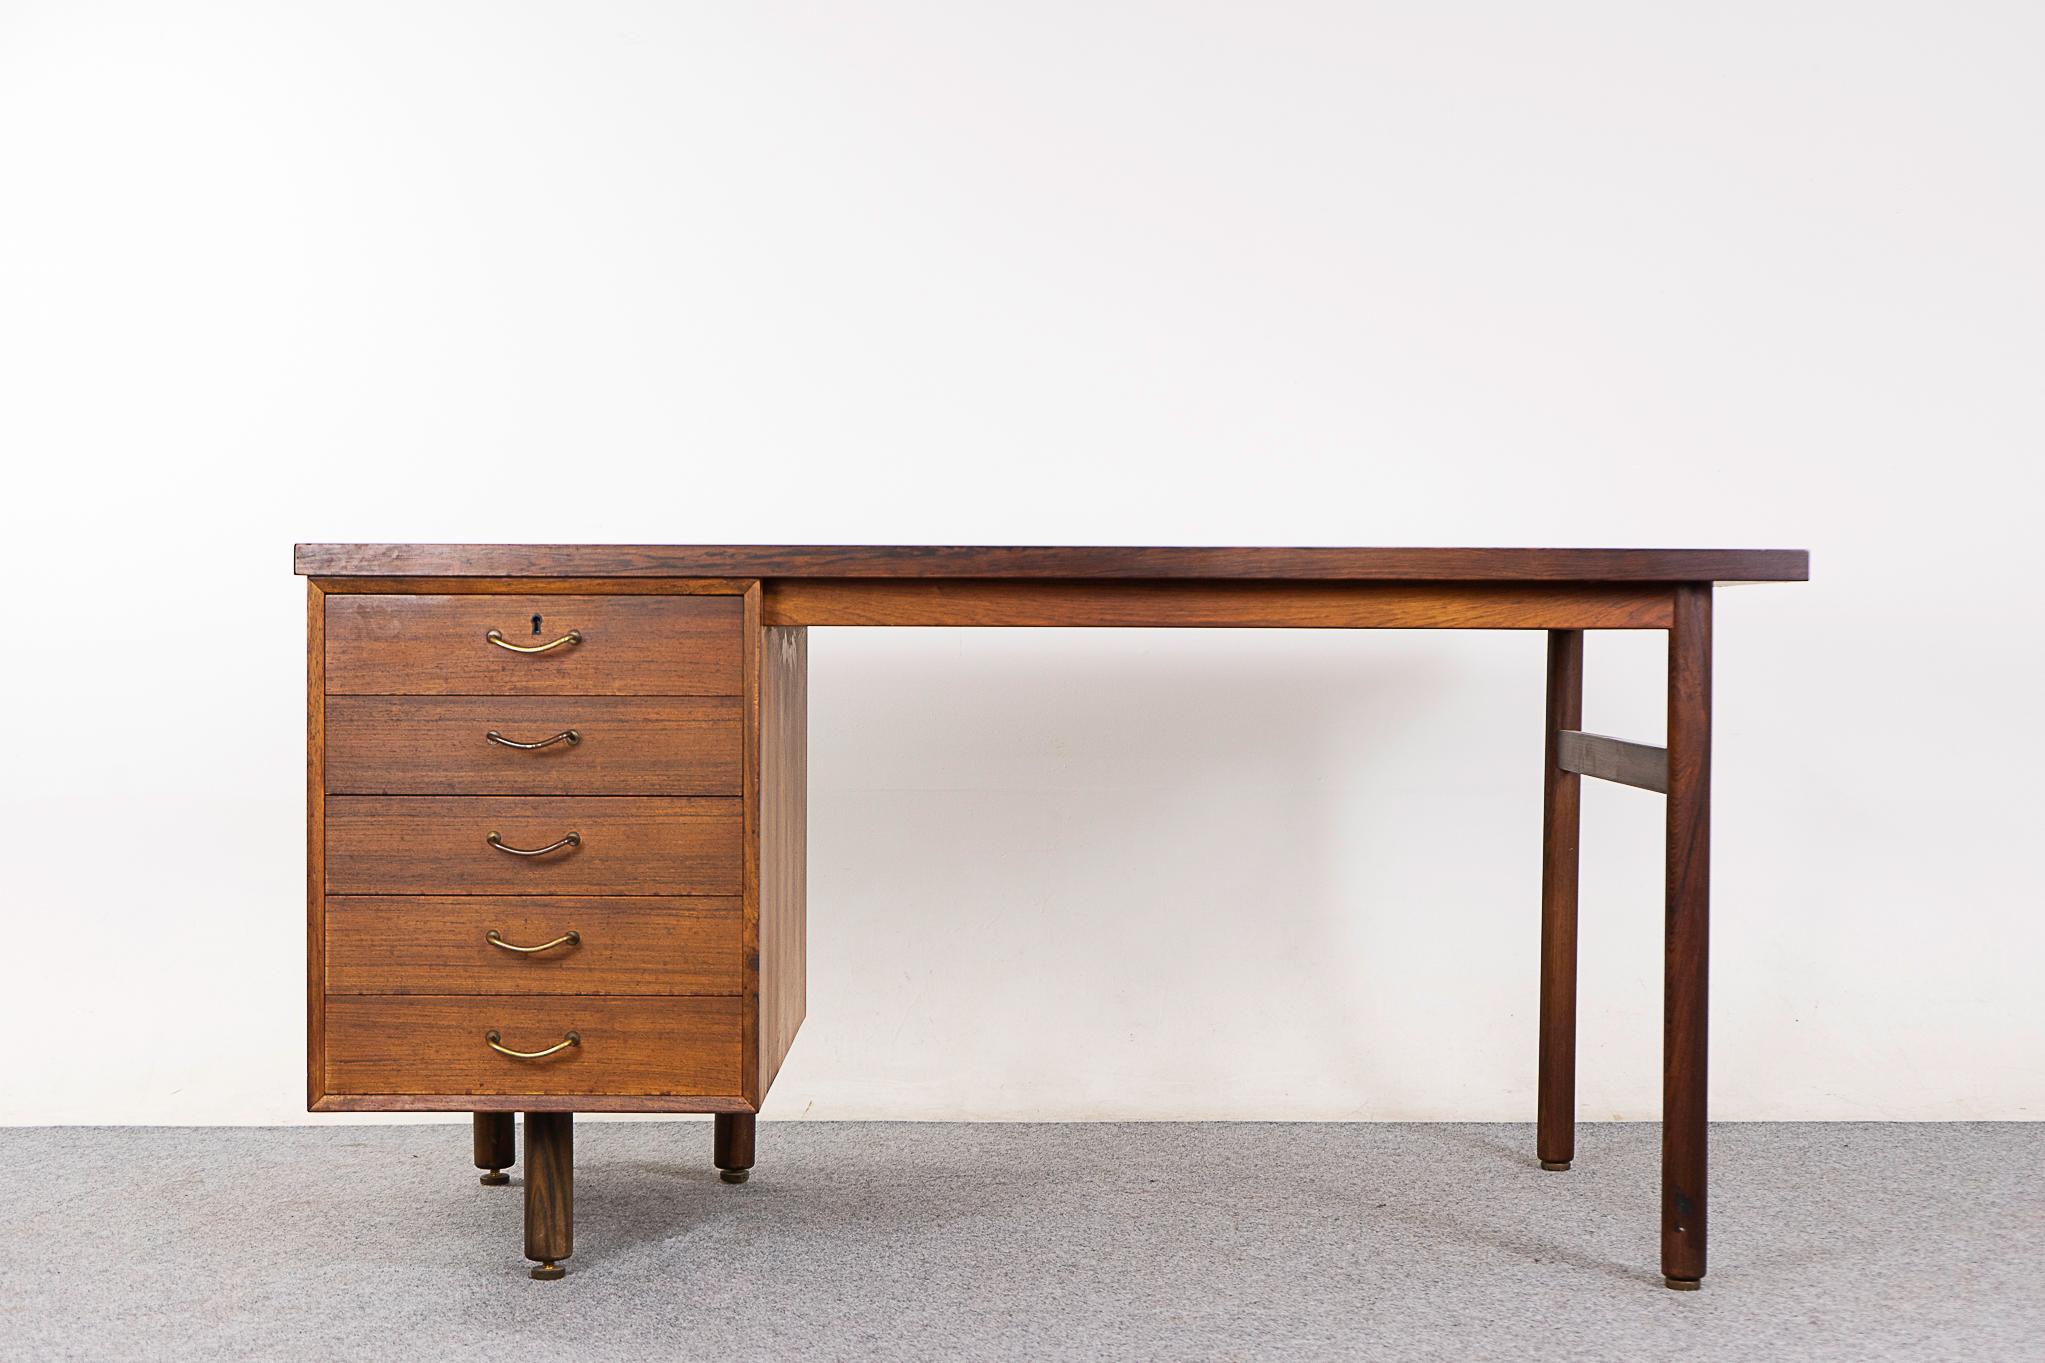 Dänischer Schreibtisch aus Palisanderholz, ca. 1960er Jahre. Einzigartiges Design mit 5 Beinen, Metallgriffen und einer Reihe von Schubladen, die alle gleichzeitig von oben verschlossen werden können! Beidseitig verarbeitet und in der Mitte eines